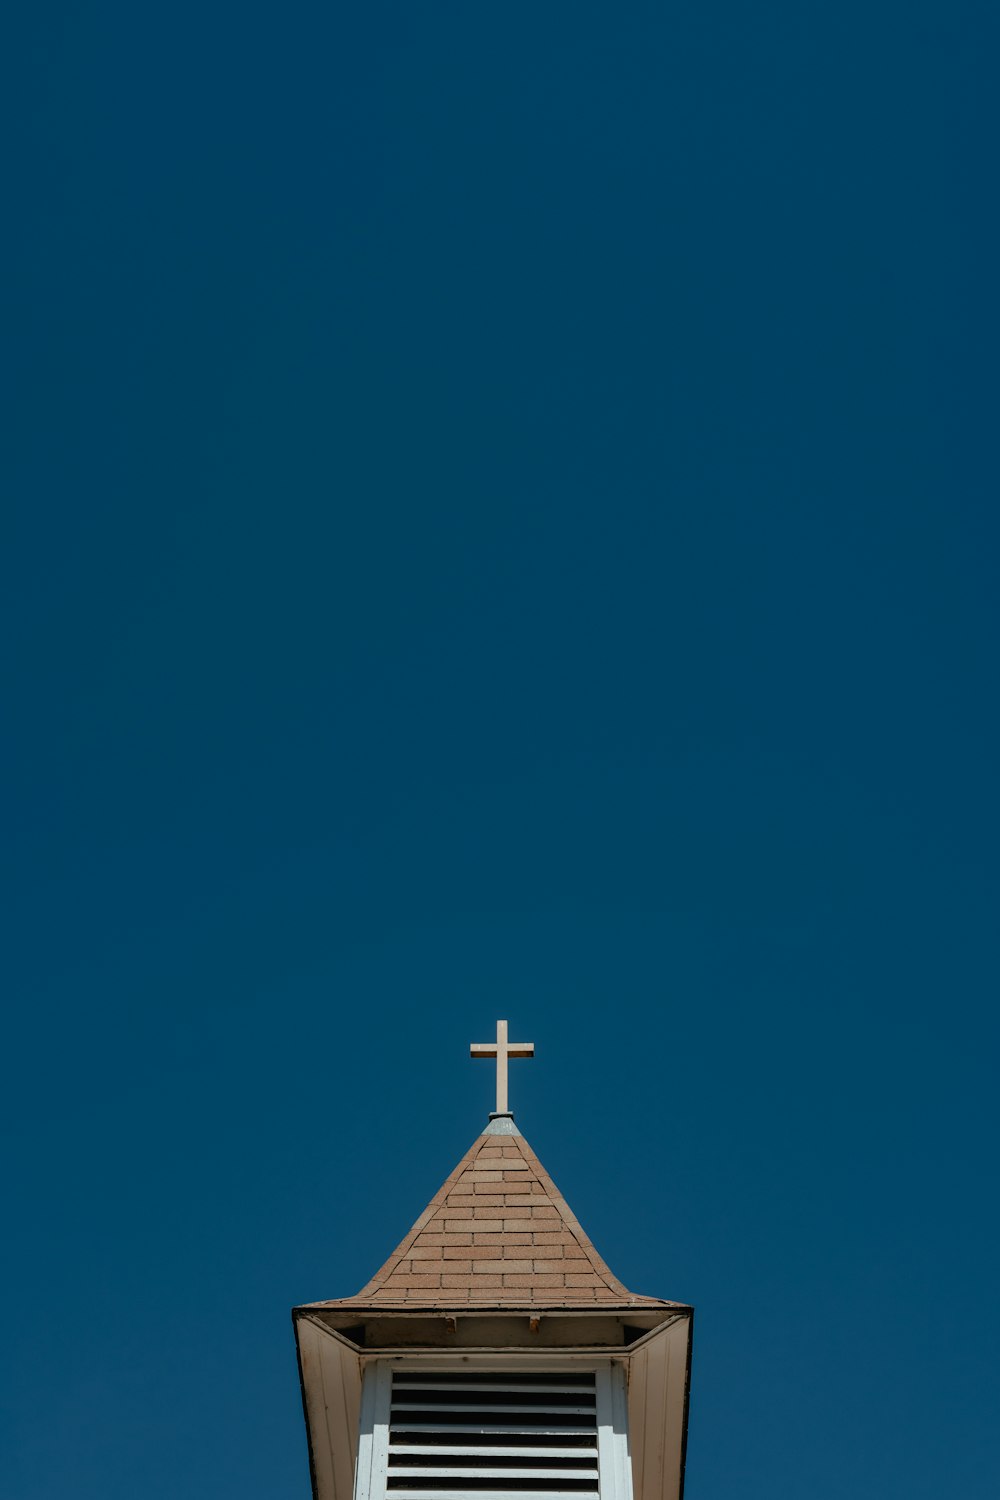 꼭대기에 십자가가있는 교회 첨탑